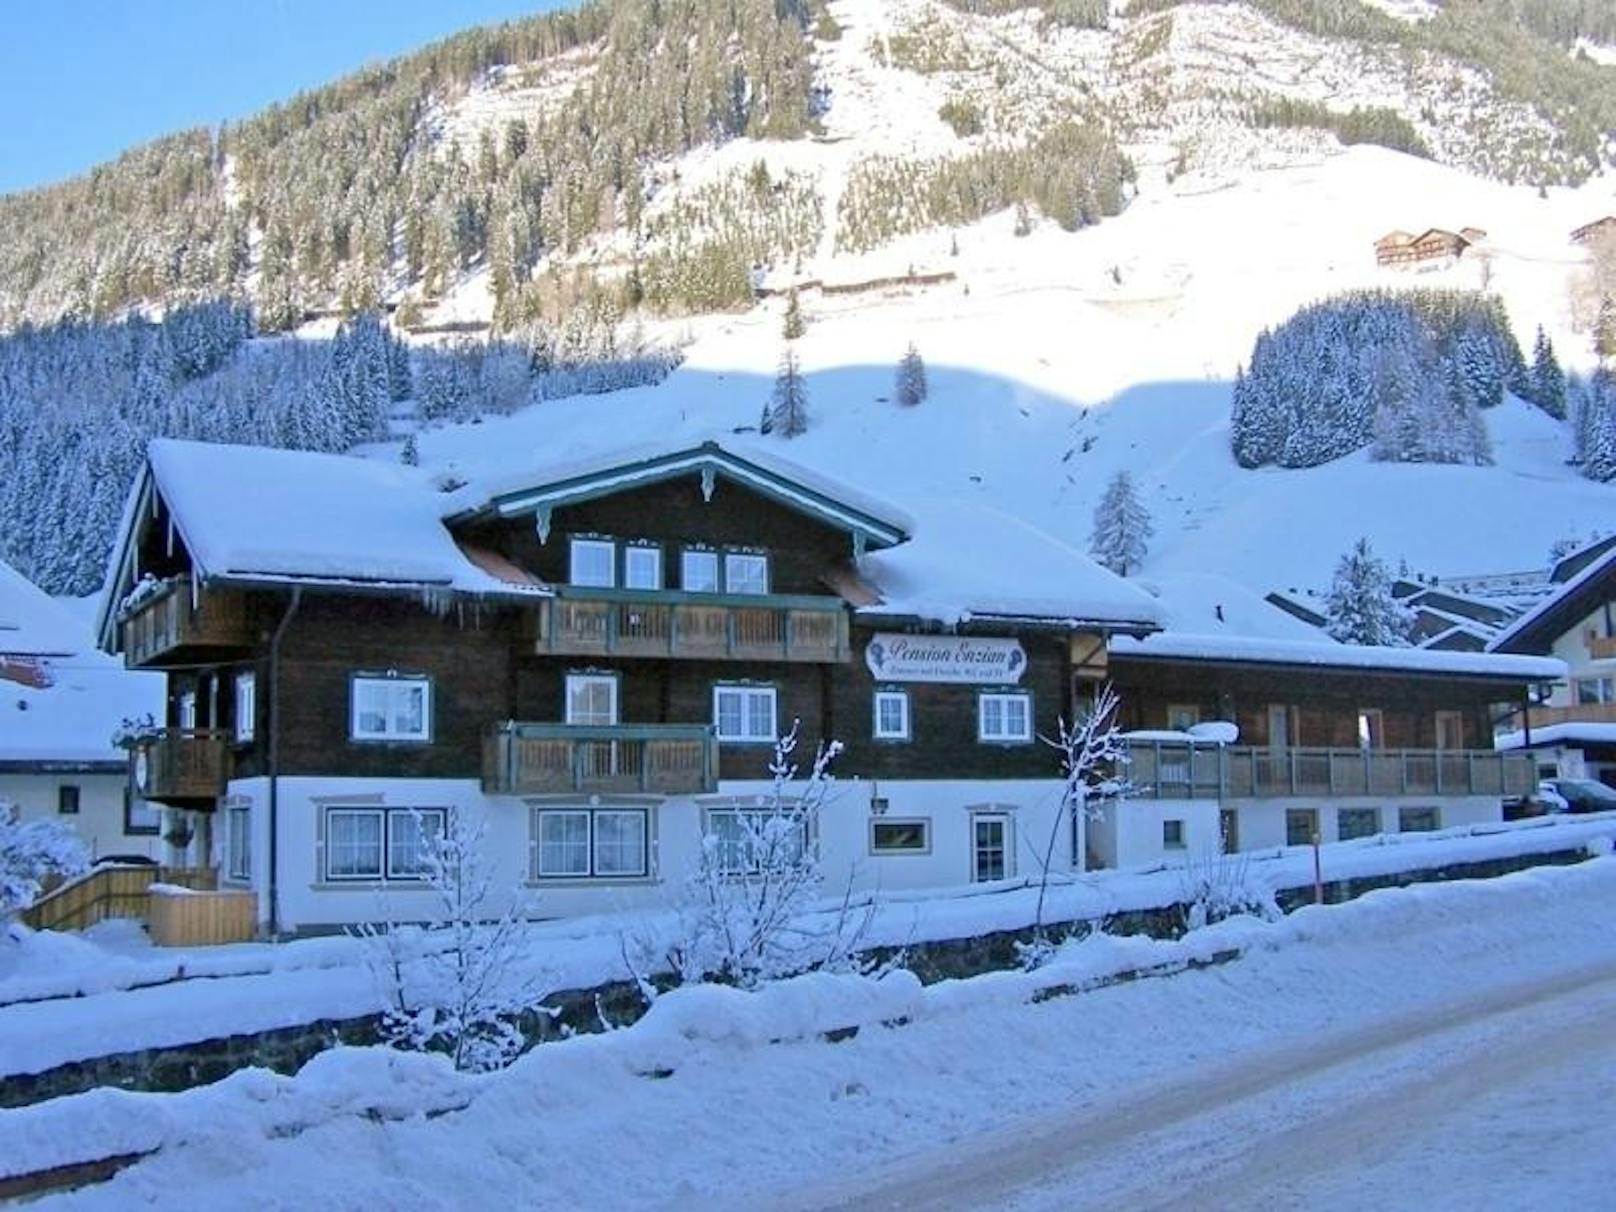 Winter-Idylle: Hierhin kam Heinz-Christian Strache oft zum Skifahren, postete auch Videos seiner Abfahrten.